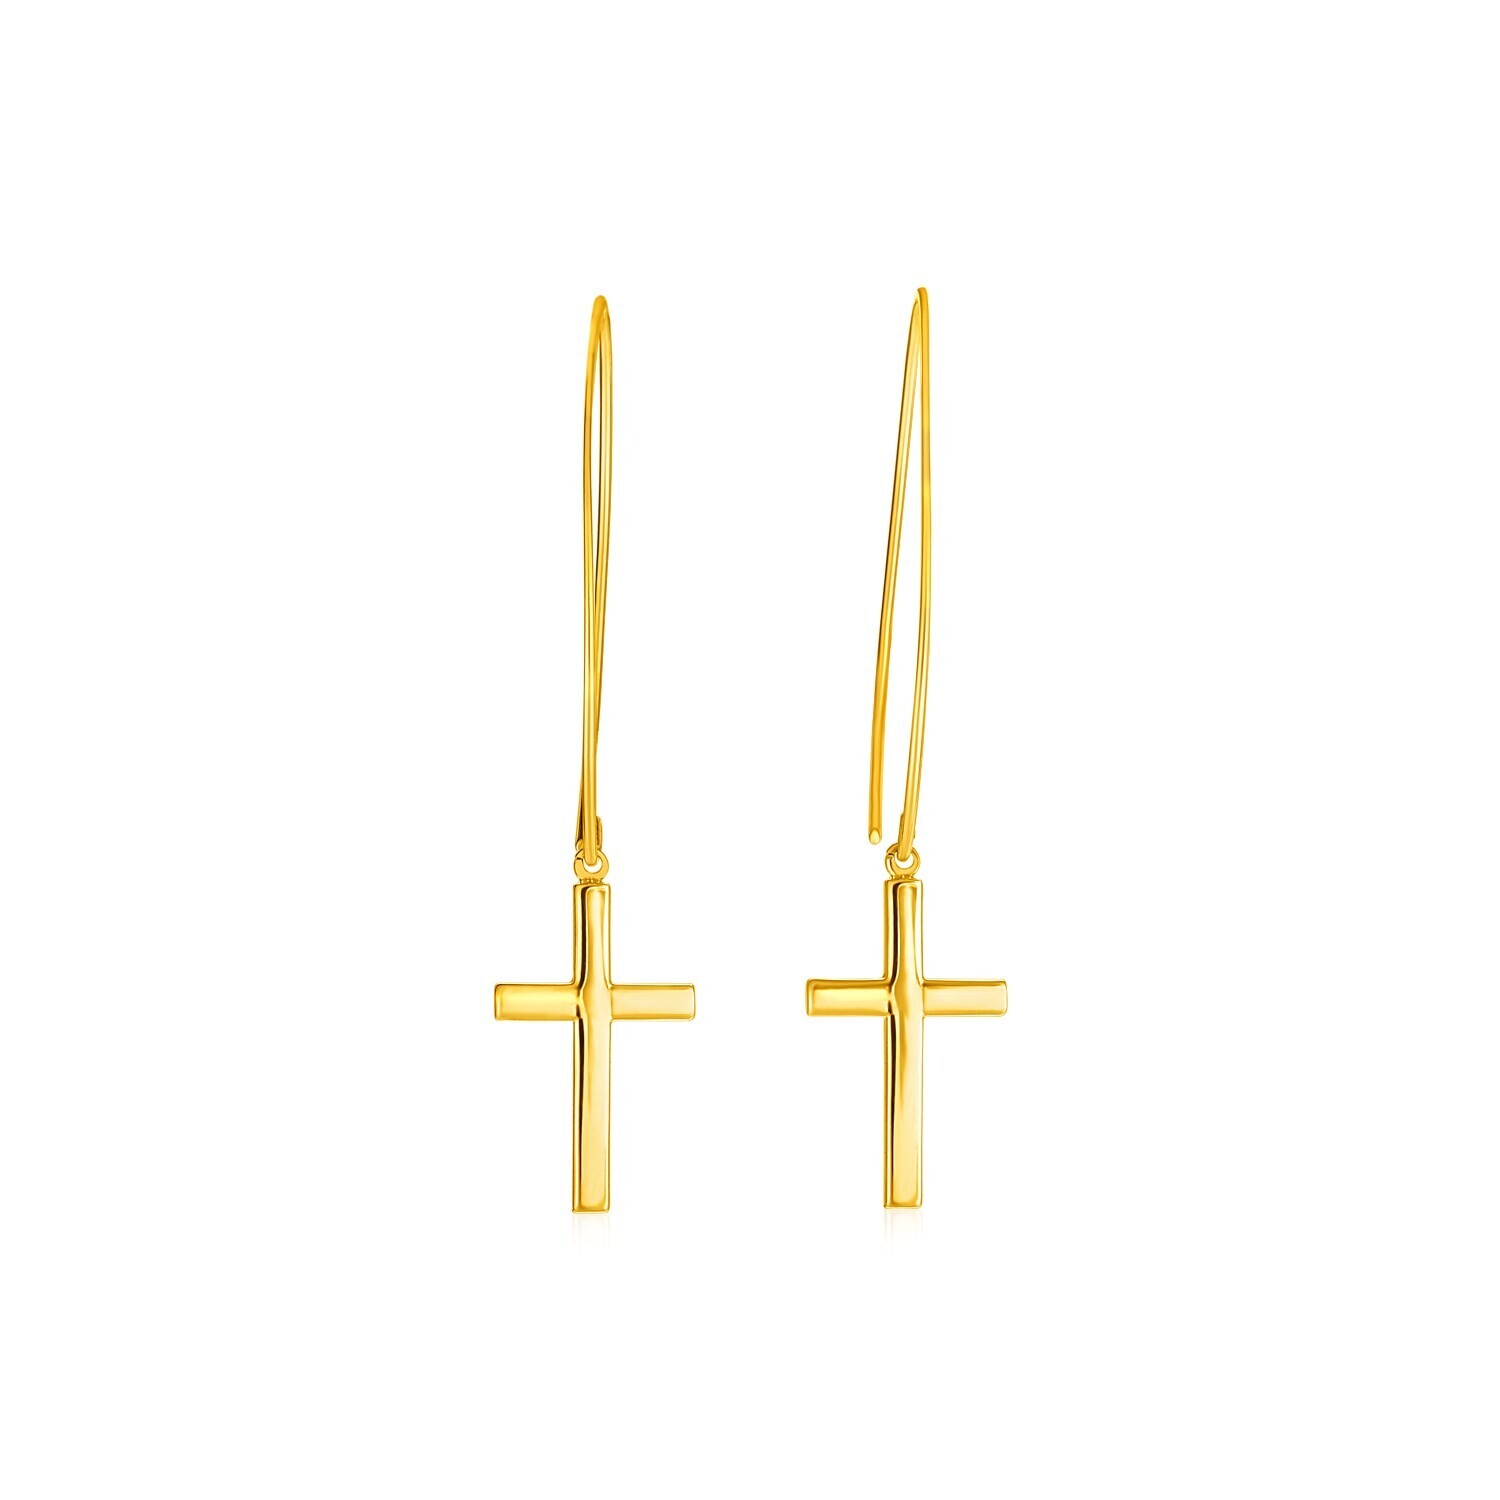 14k Yellow Gold Dangle Cross Earrings